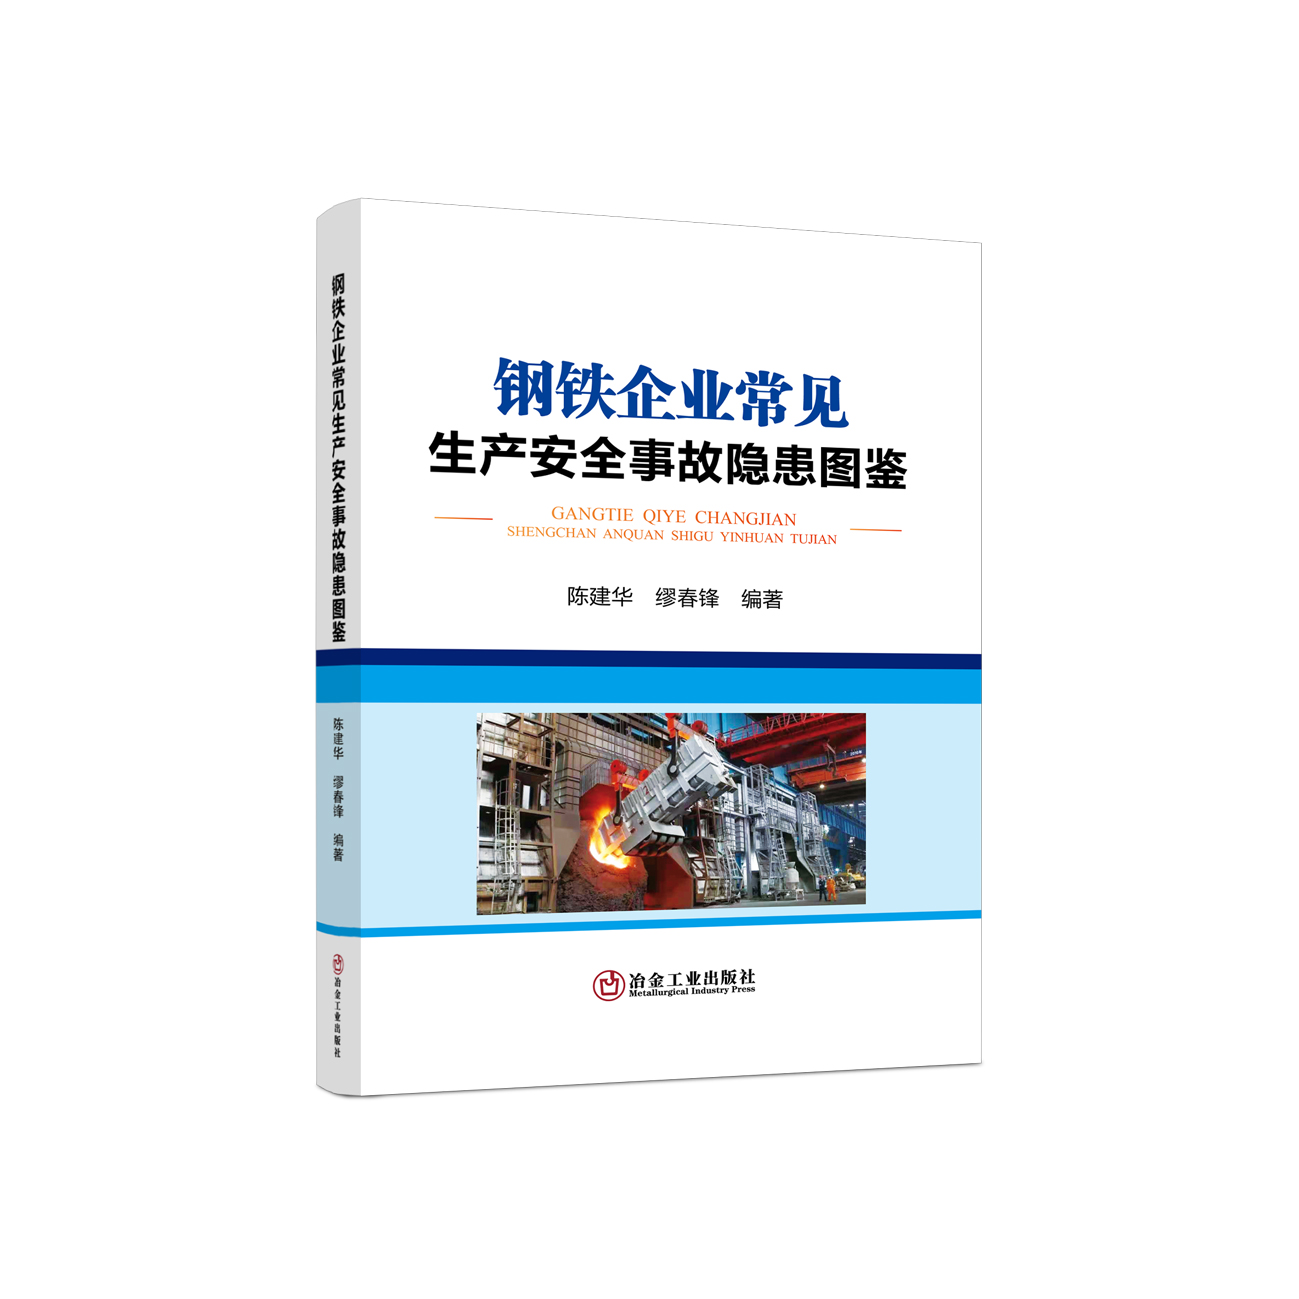 钢铁企业常见生产安全事故隐患图鉴/陈建华,缪春锋  企业安全培训用书